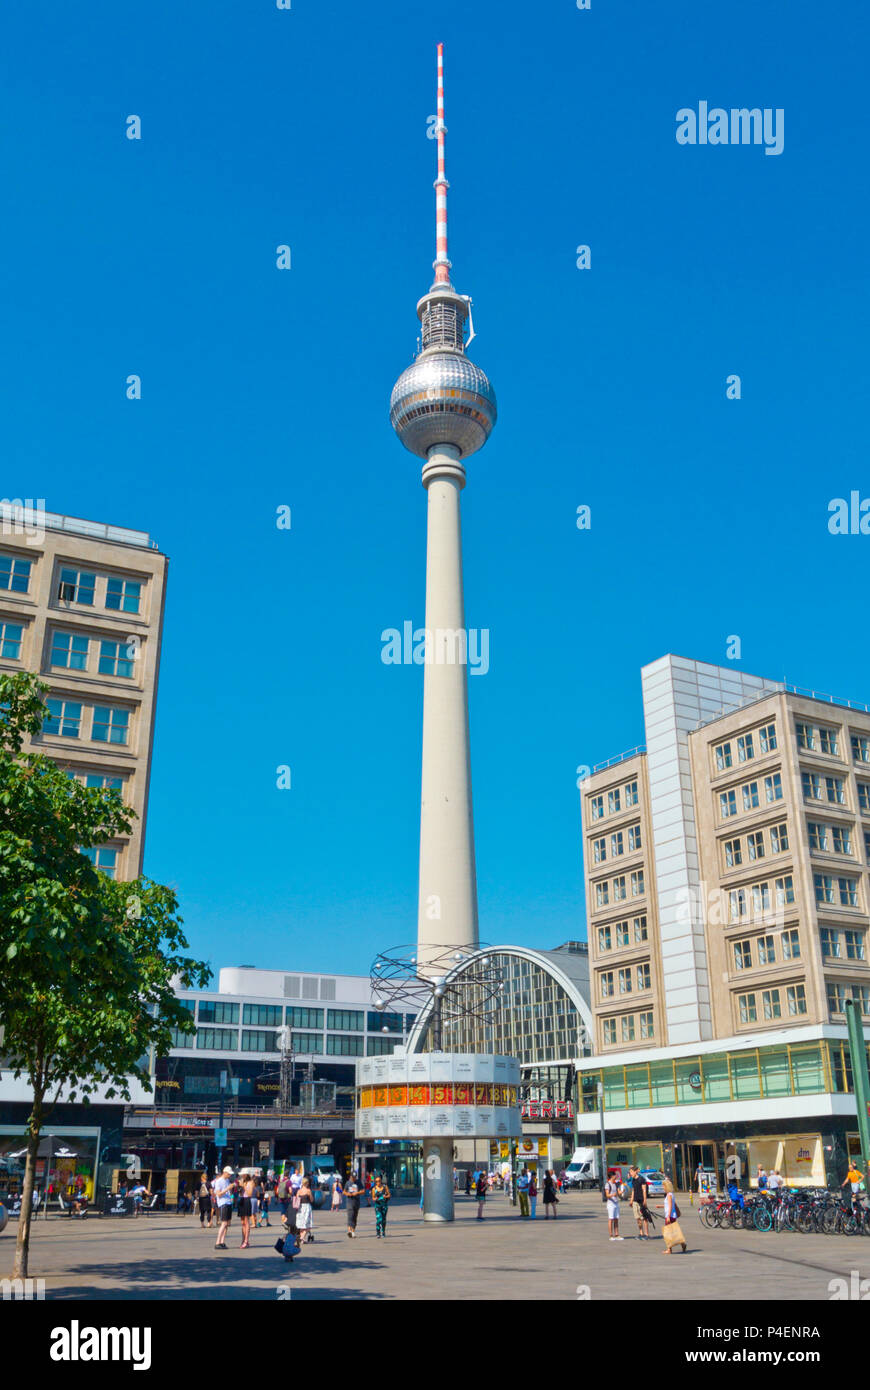 Fernsehturm, la tour de télévision, et l'horloge mondiale, Alexanderplatz, Berlin, Allemagne Banque D'Images